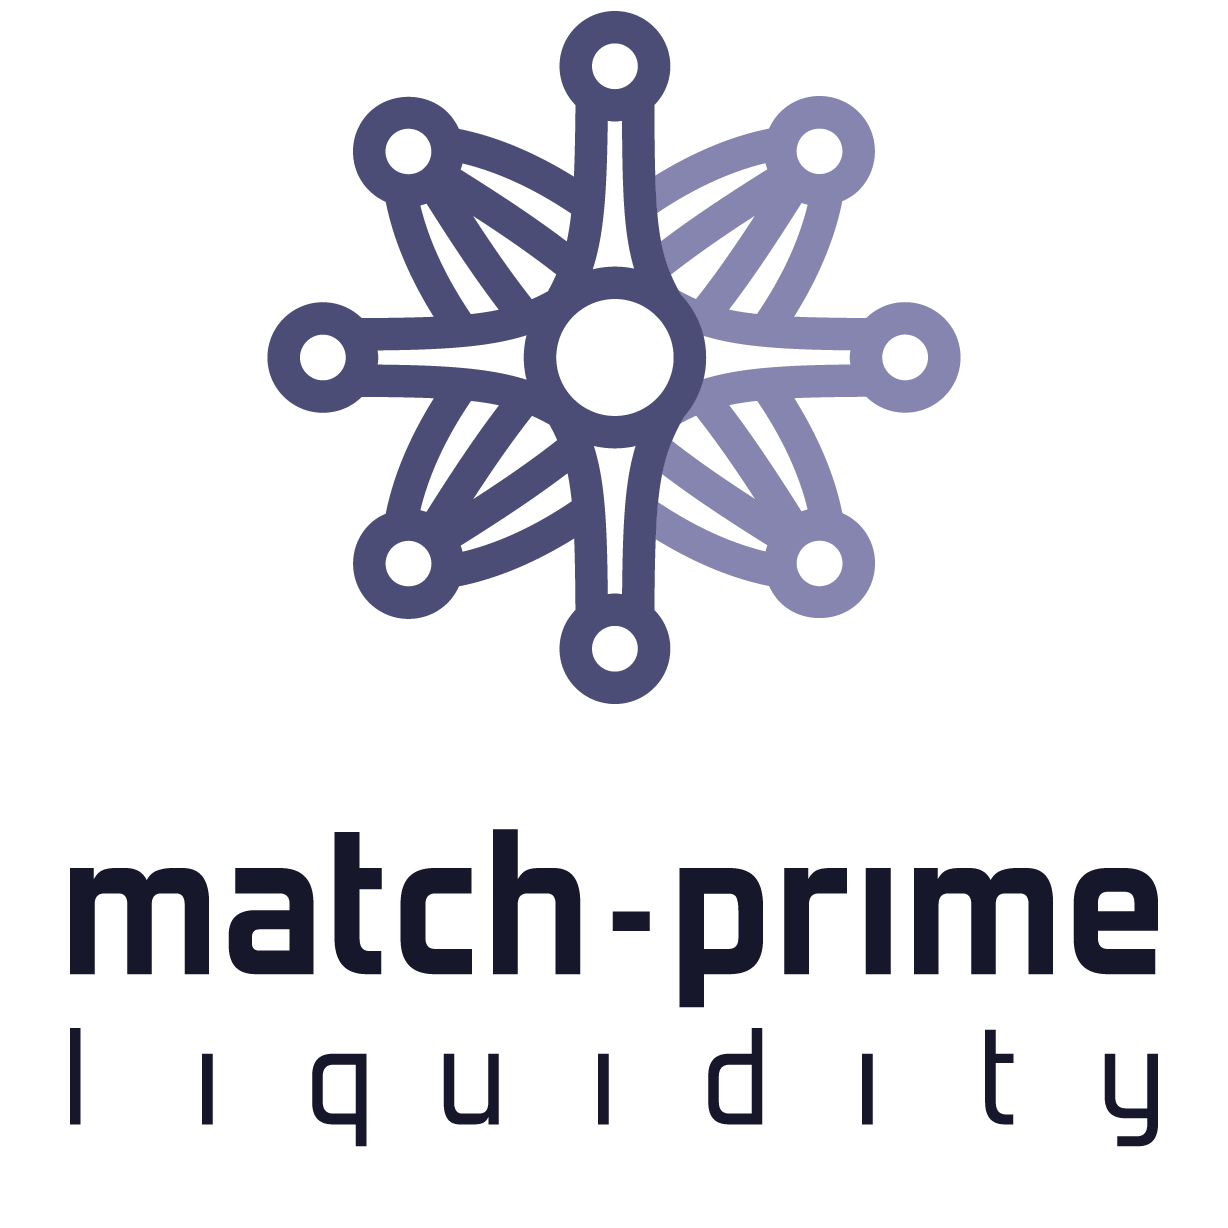 Match-Prime logo picture.